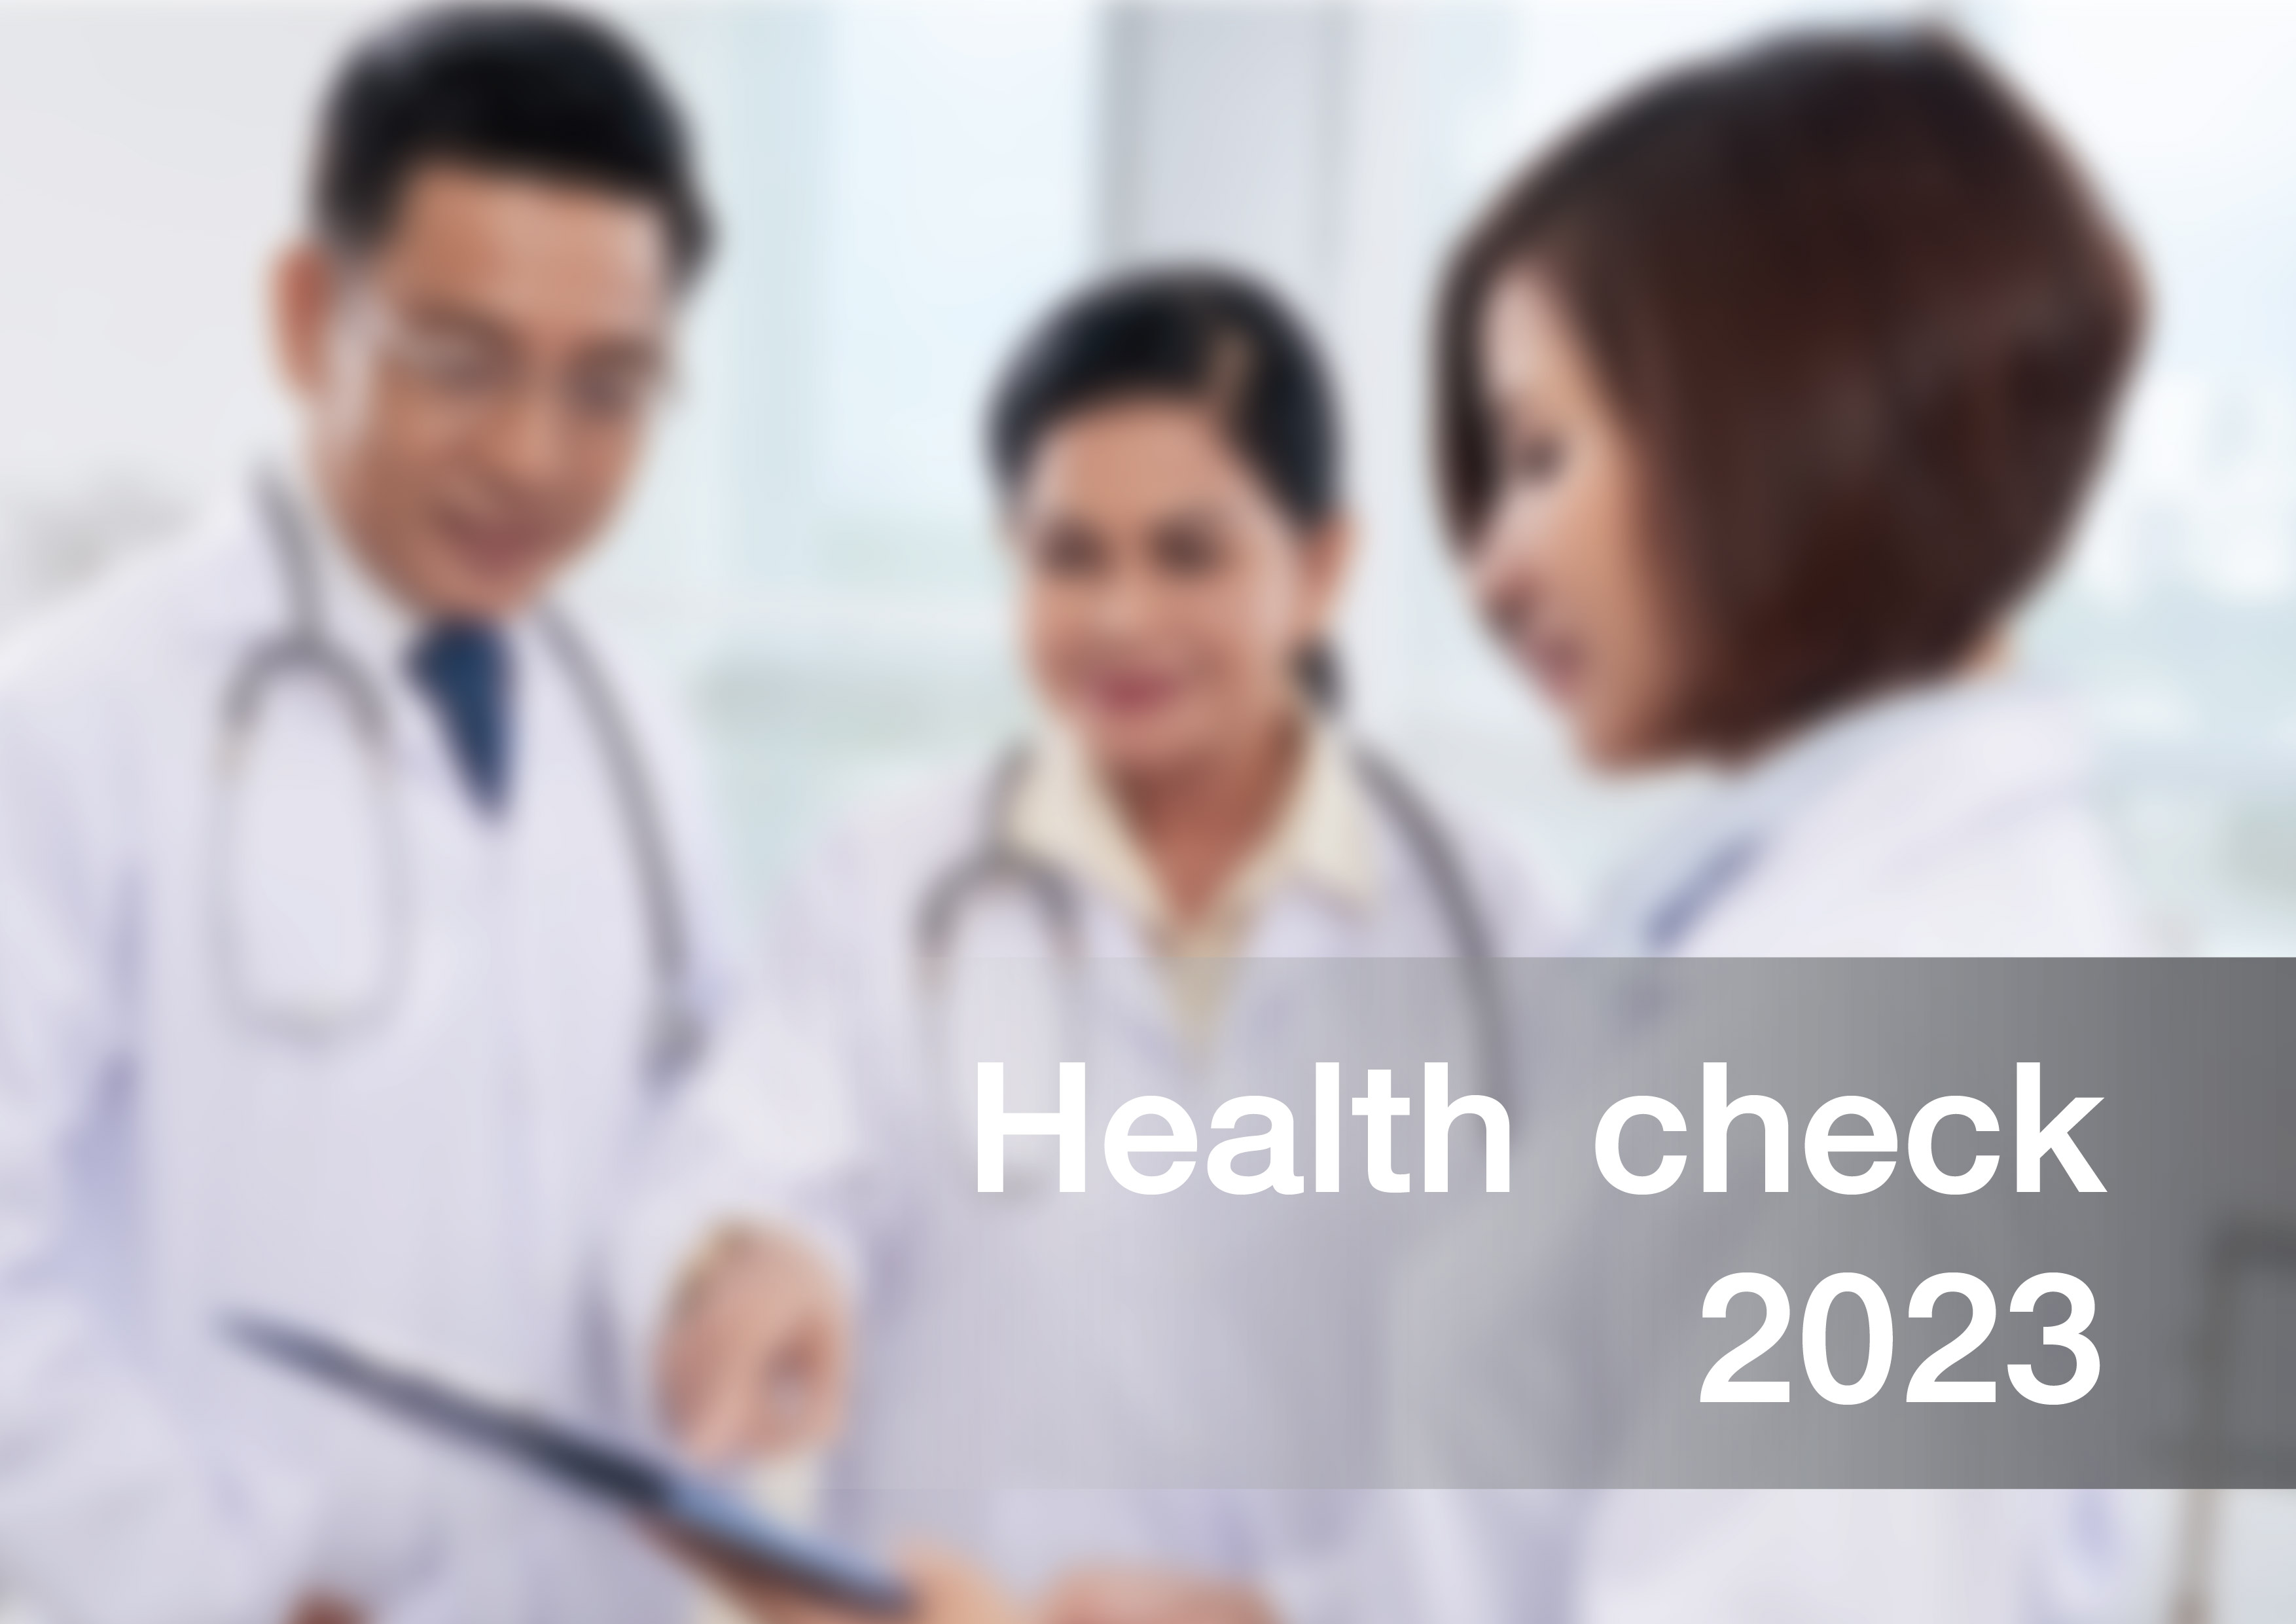 กิจกรรมตรวจสุขภาพพนักงาน ประจำปี 2023